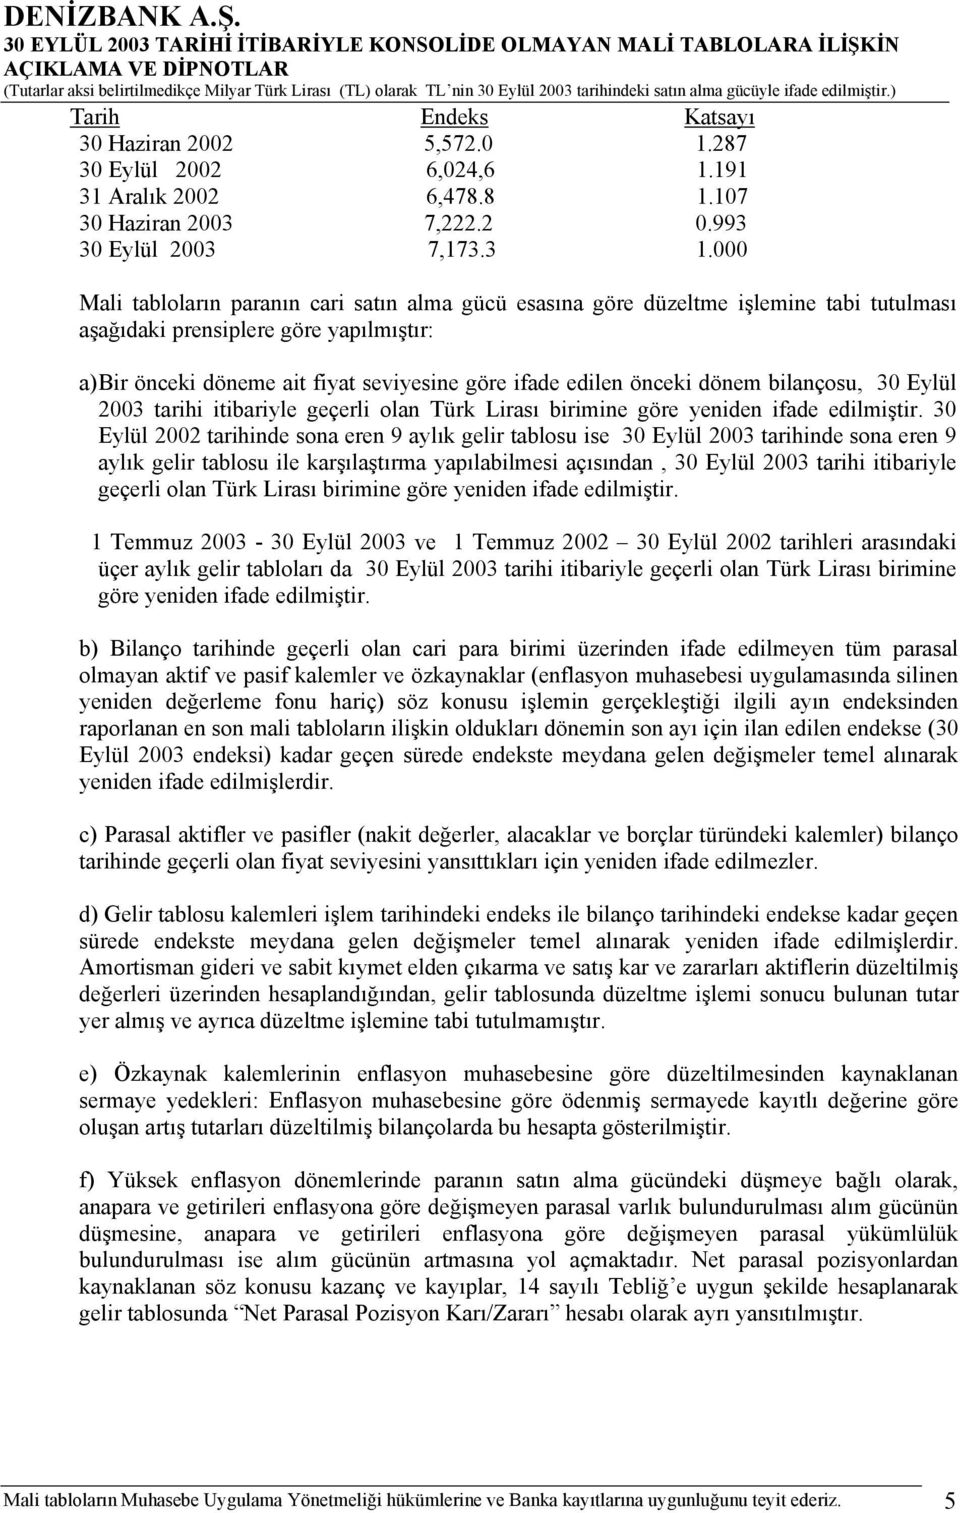 önceki dönem bilançosu, 30 Eylül 2003 tarihi itibariyle geçerli olan Türk Lirası birimine göre yeniden ifade edilmiştir.